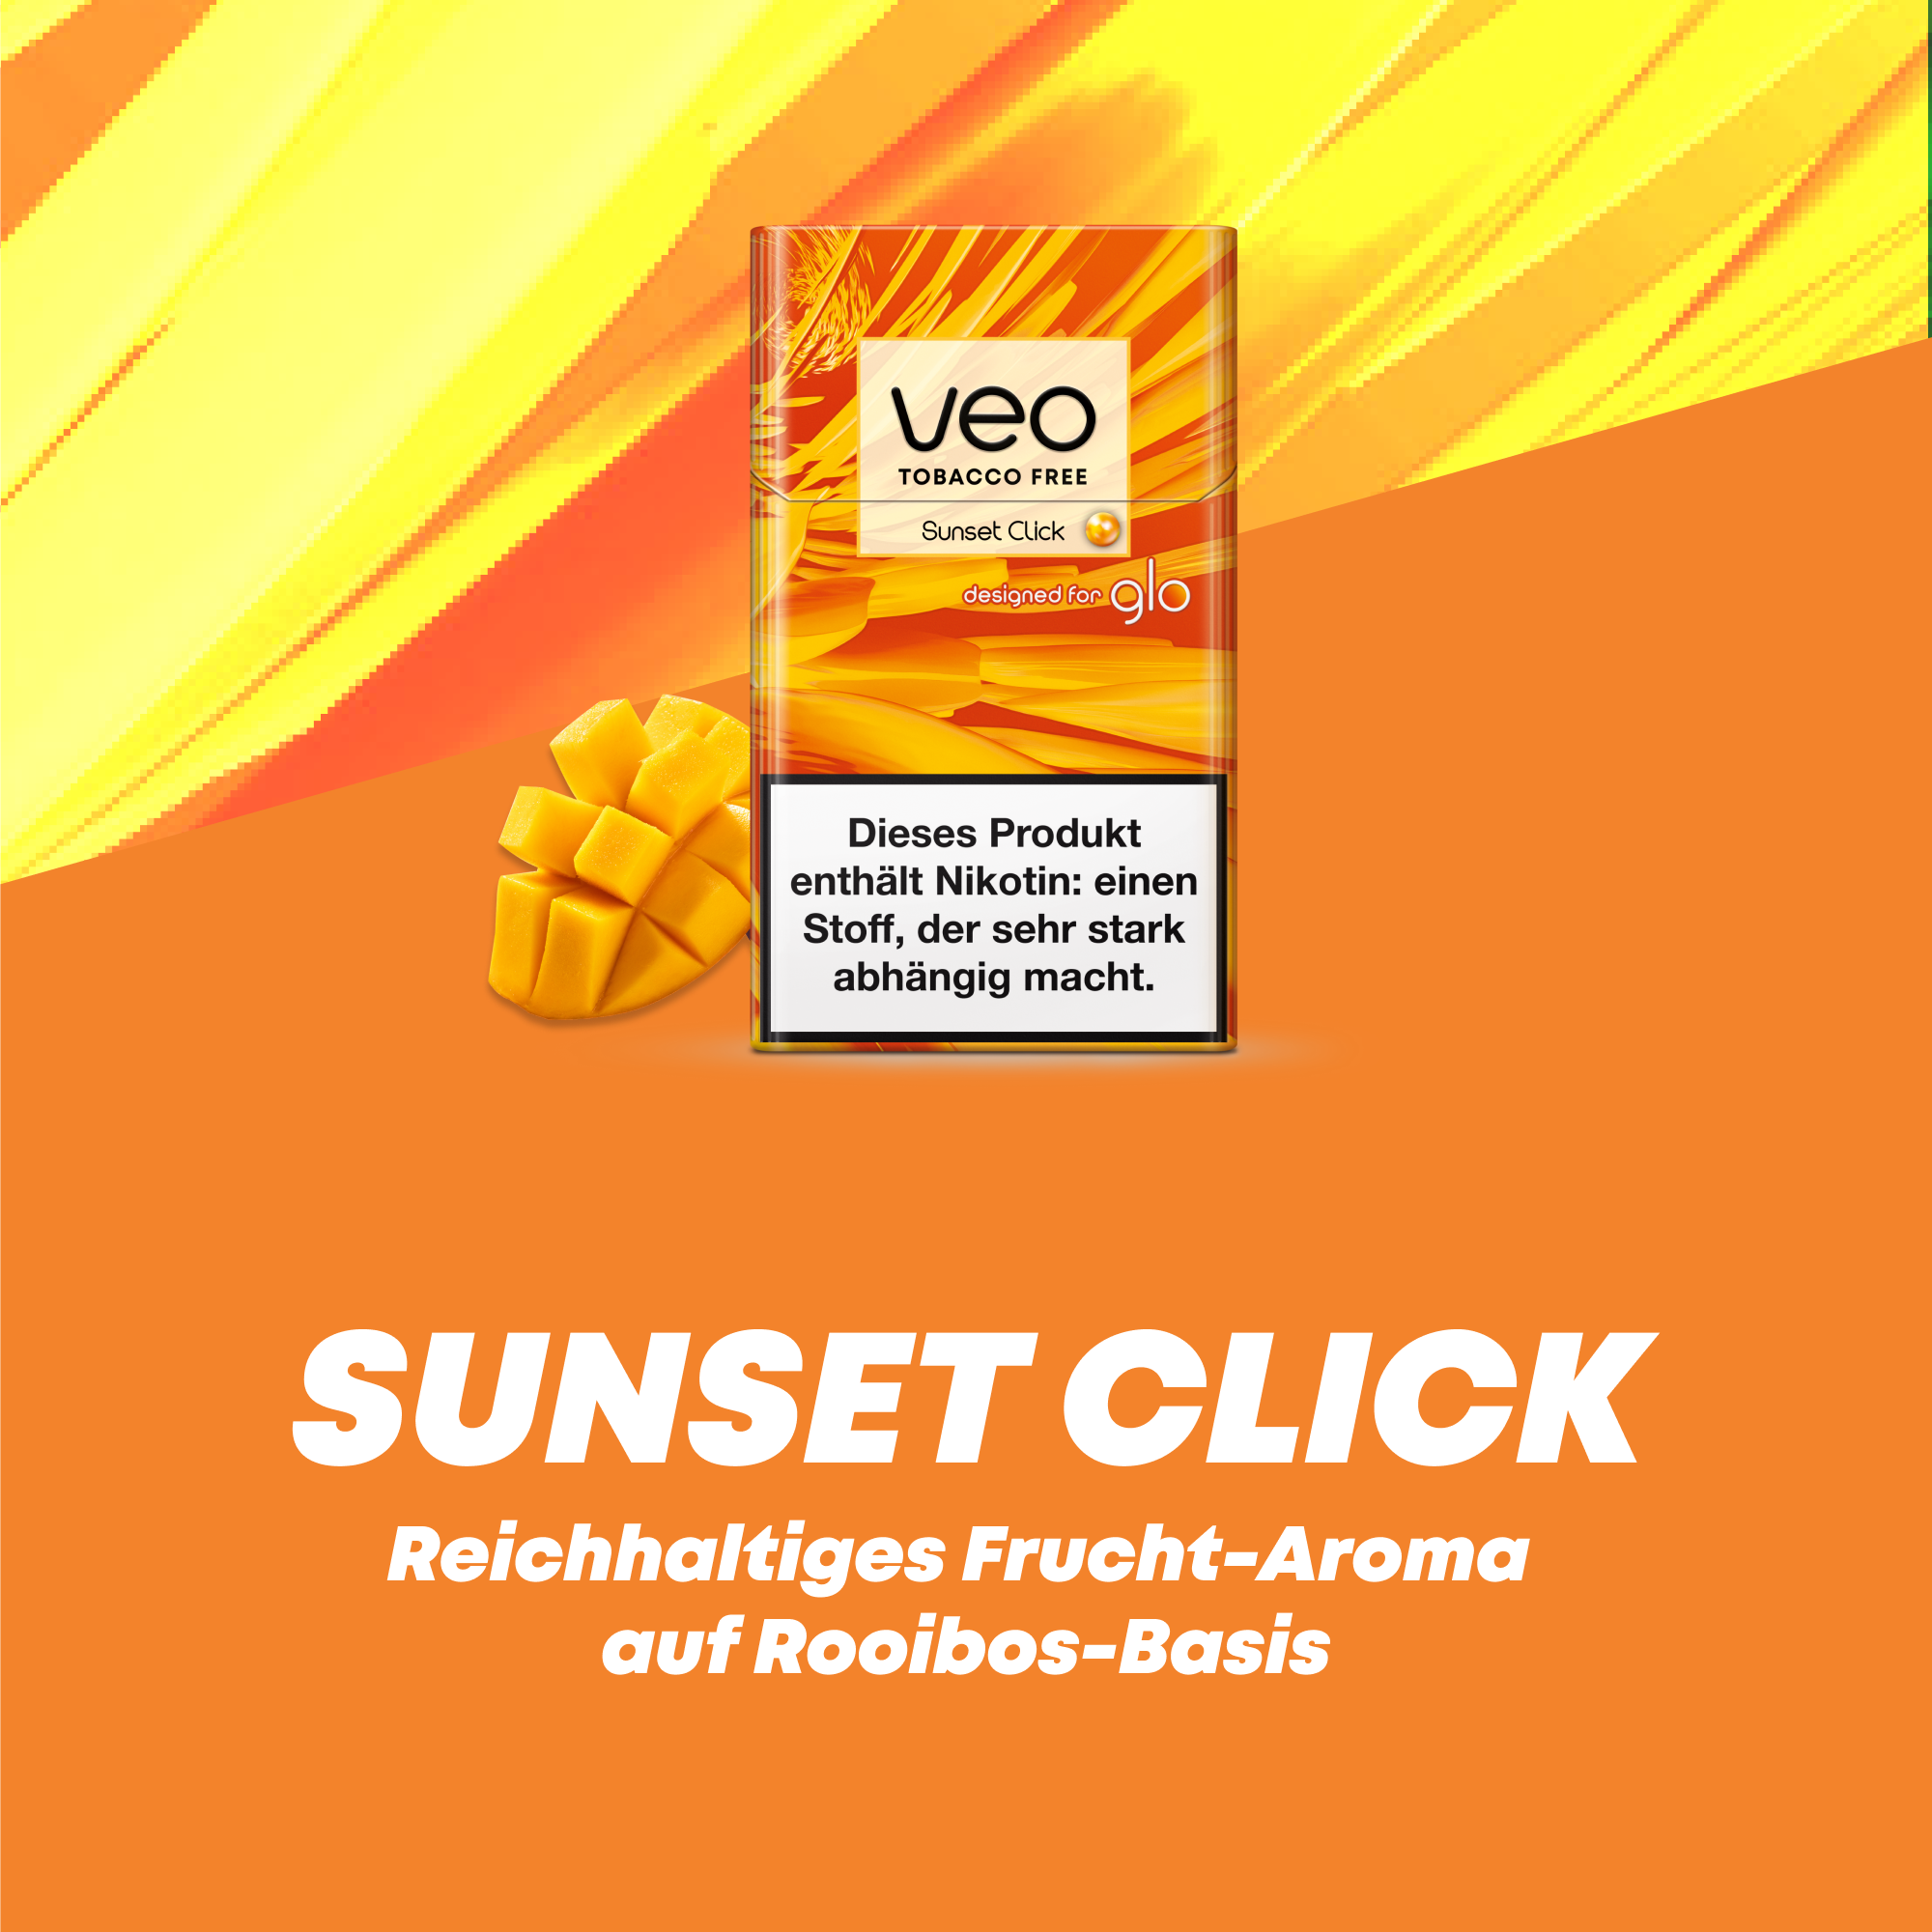 glo veo Sunset Click (Schachtel)